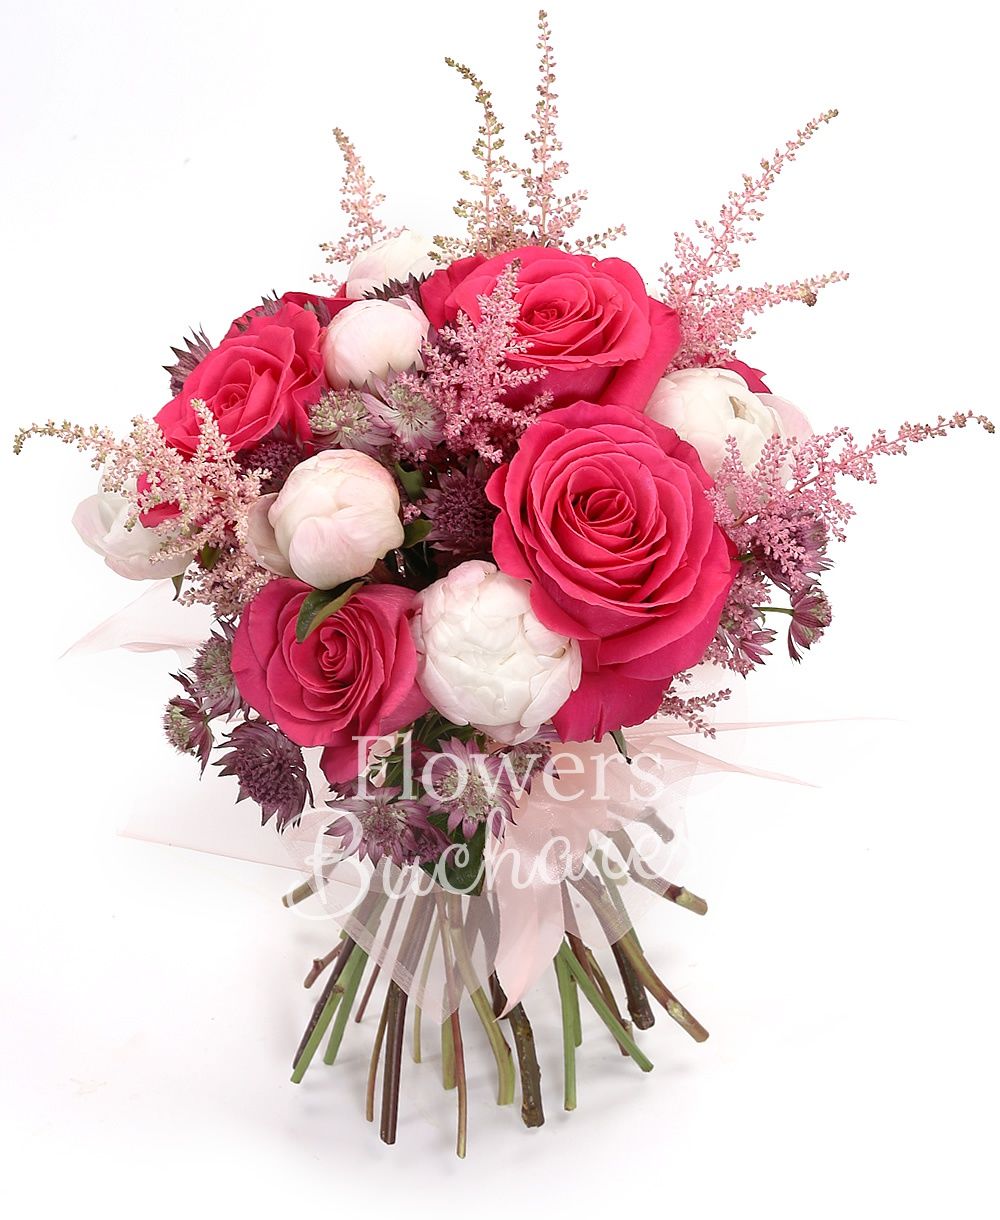 7 pink roses, 7 white peonies, 10 astranția, 7 pink astilbe